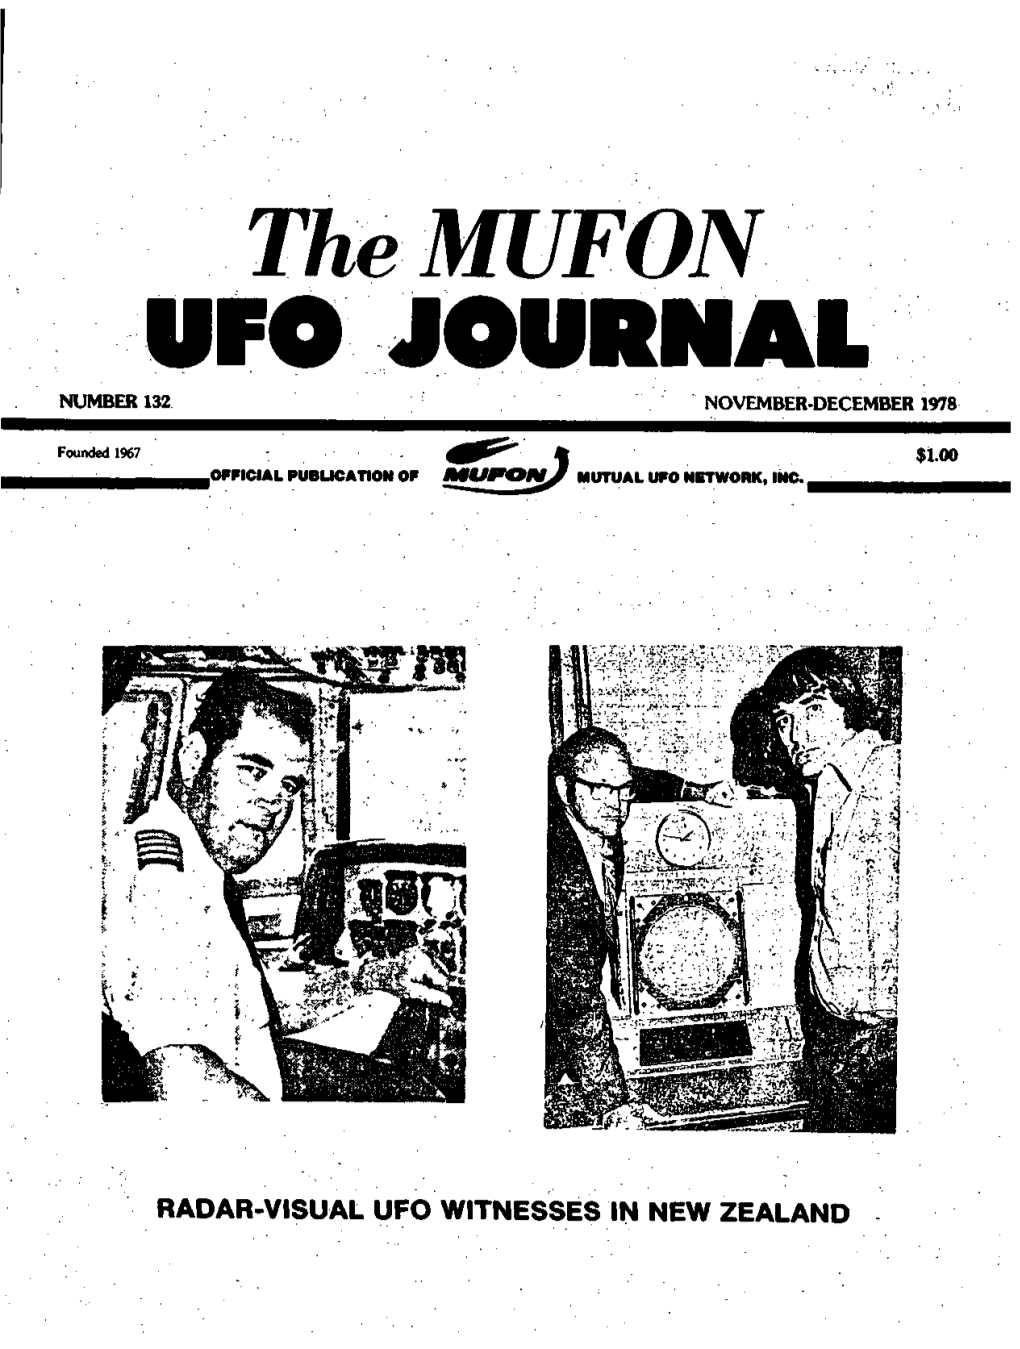 Themufon UFO JOURNAL NUMBER 132 NOVEMBER-DECEMBER 1978